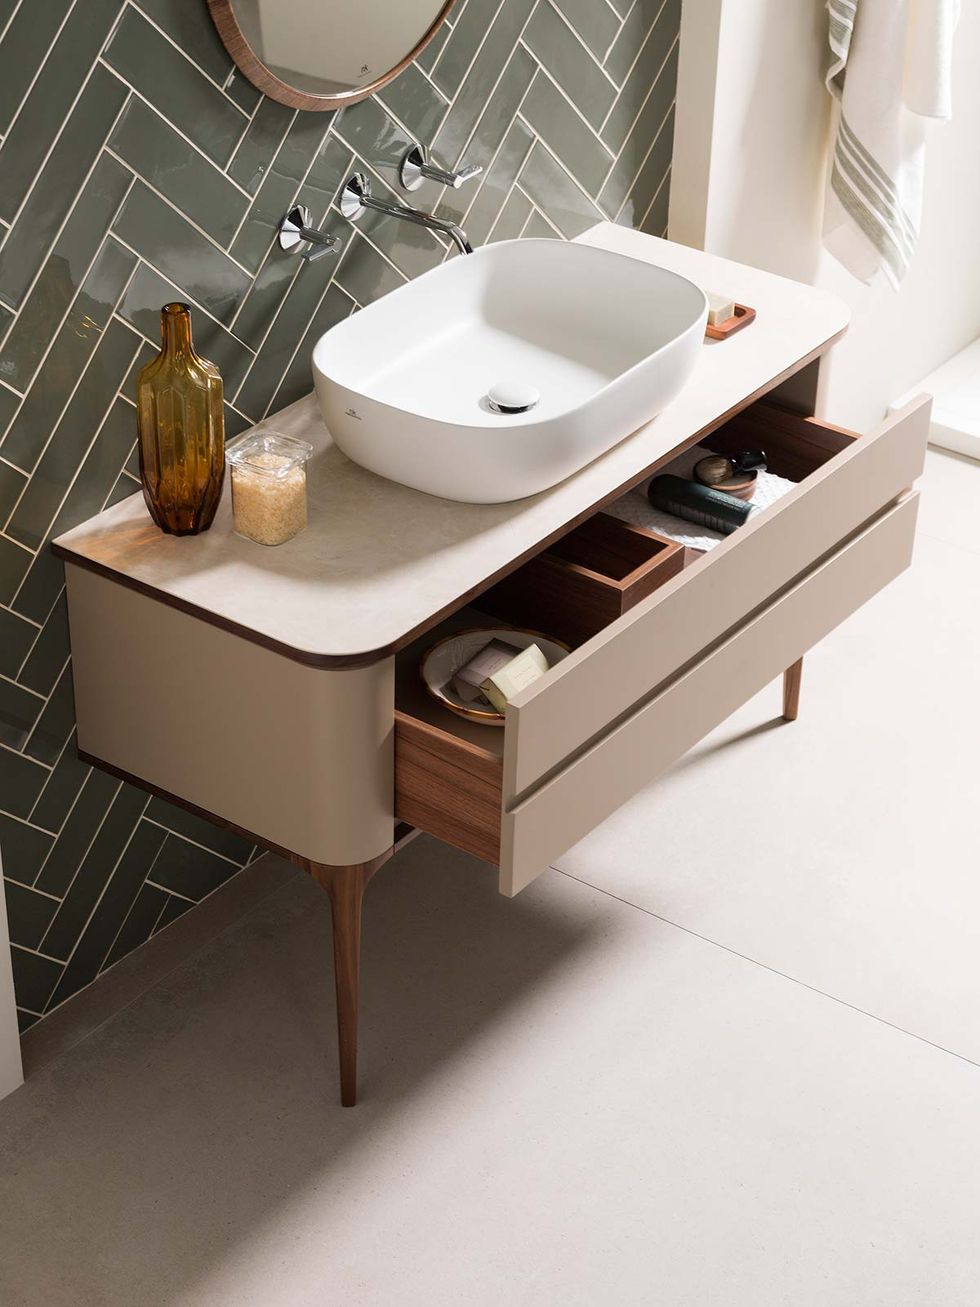 El lavabo de pedestal es un mueble decorativo con un diseño